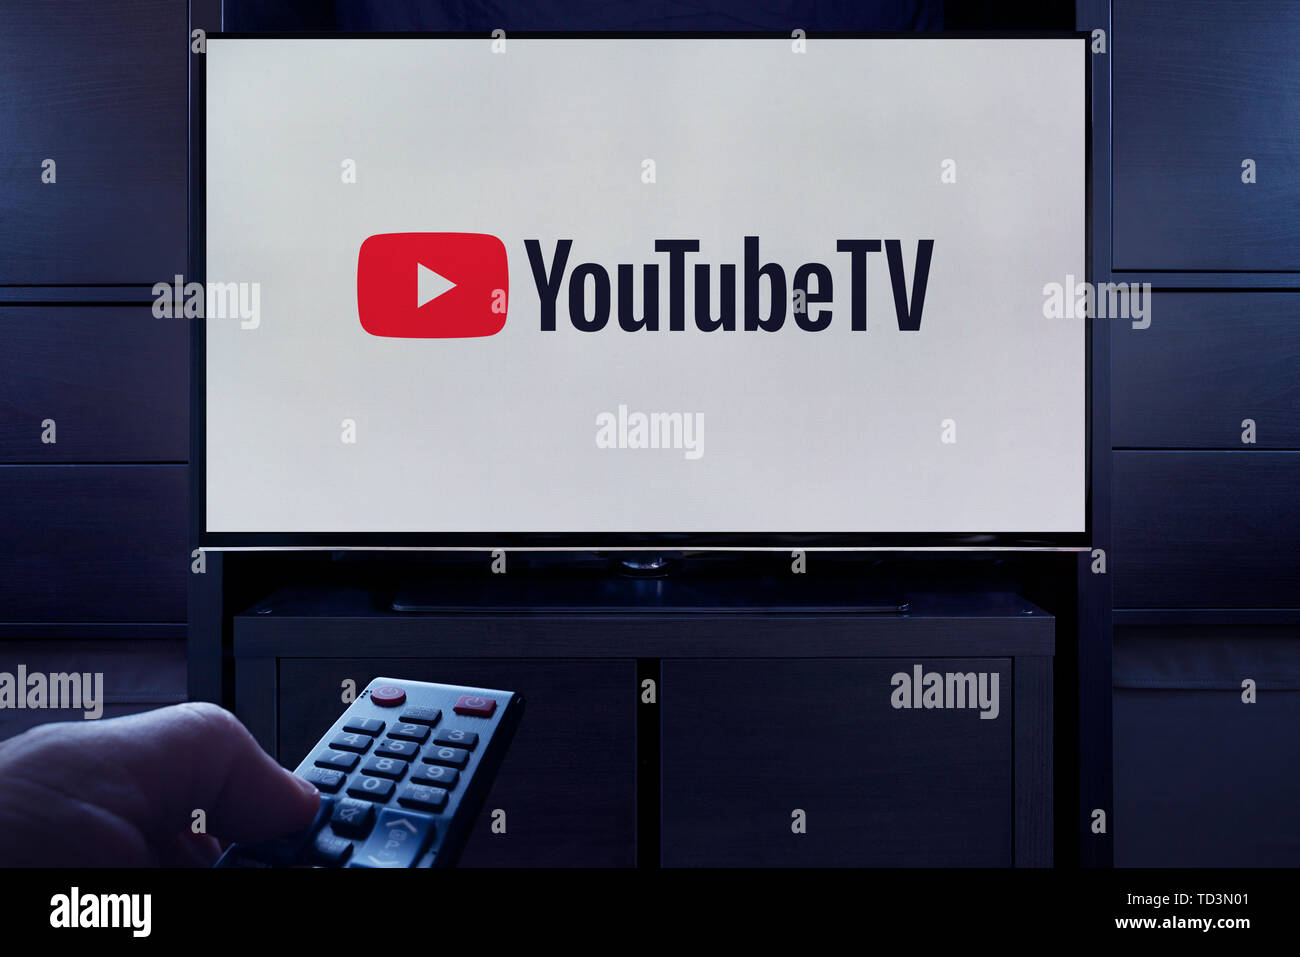 Un homme d'un points TV remote à la télévision qui affiche le logo de la télé à la demande YouTube video streaming service (usage éditorial uniquement). Banque D'Images